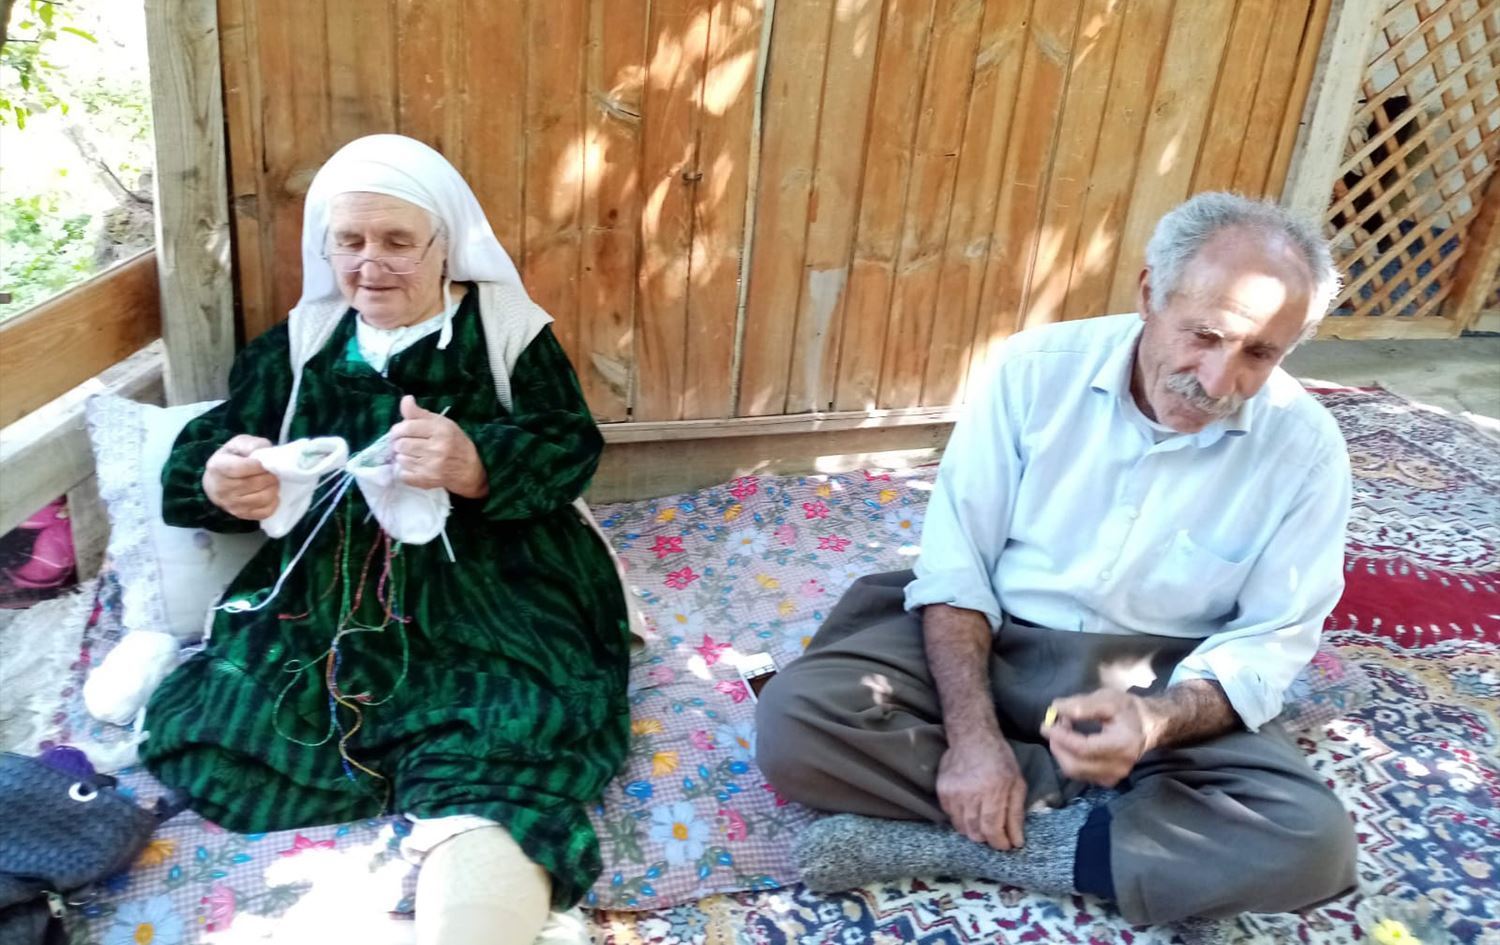 ATK 'cezaevinde kalabilir' dedi: 81 yaşındaki kadın tekrar tutuklandı